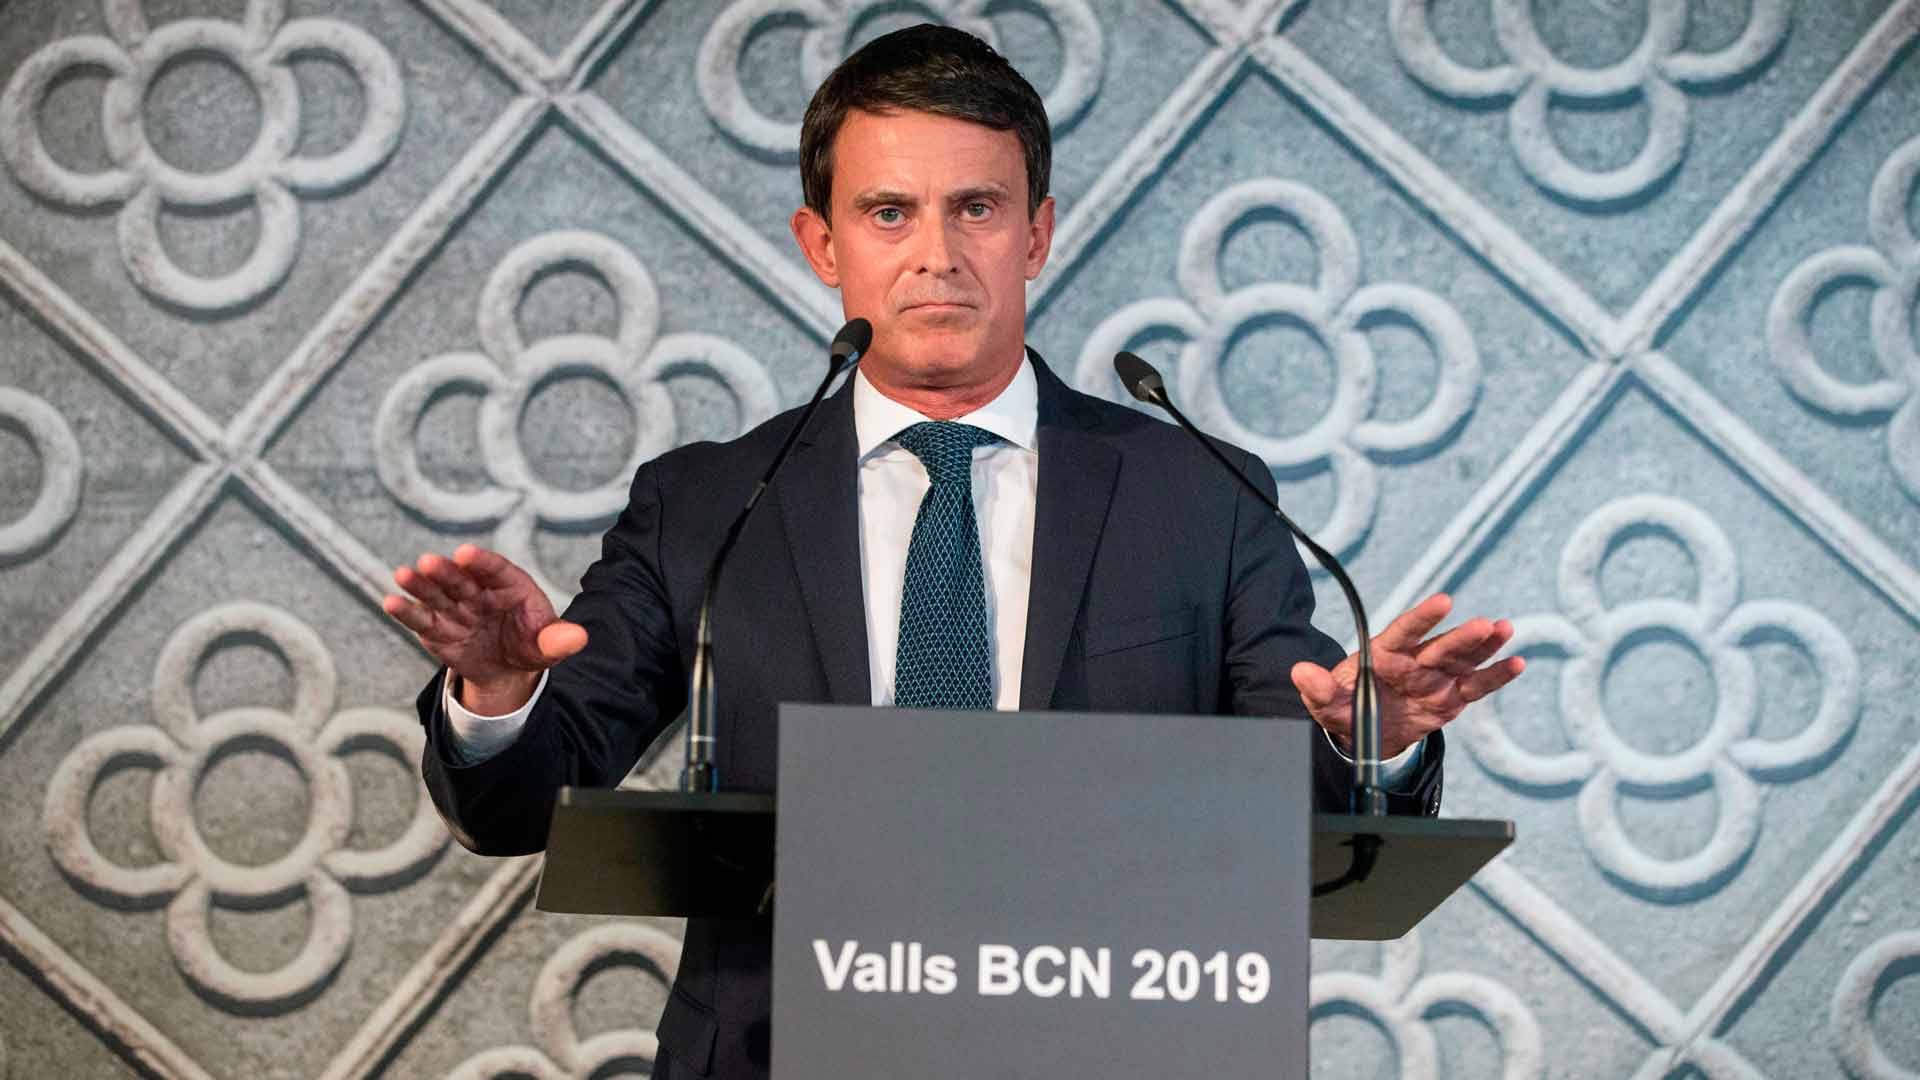 Manuel Valls quiere ser "el próximo alcalde de Barcelona"